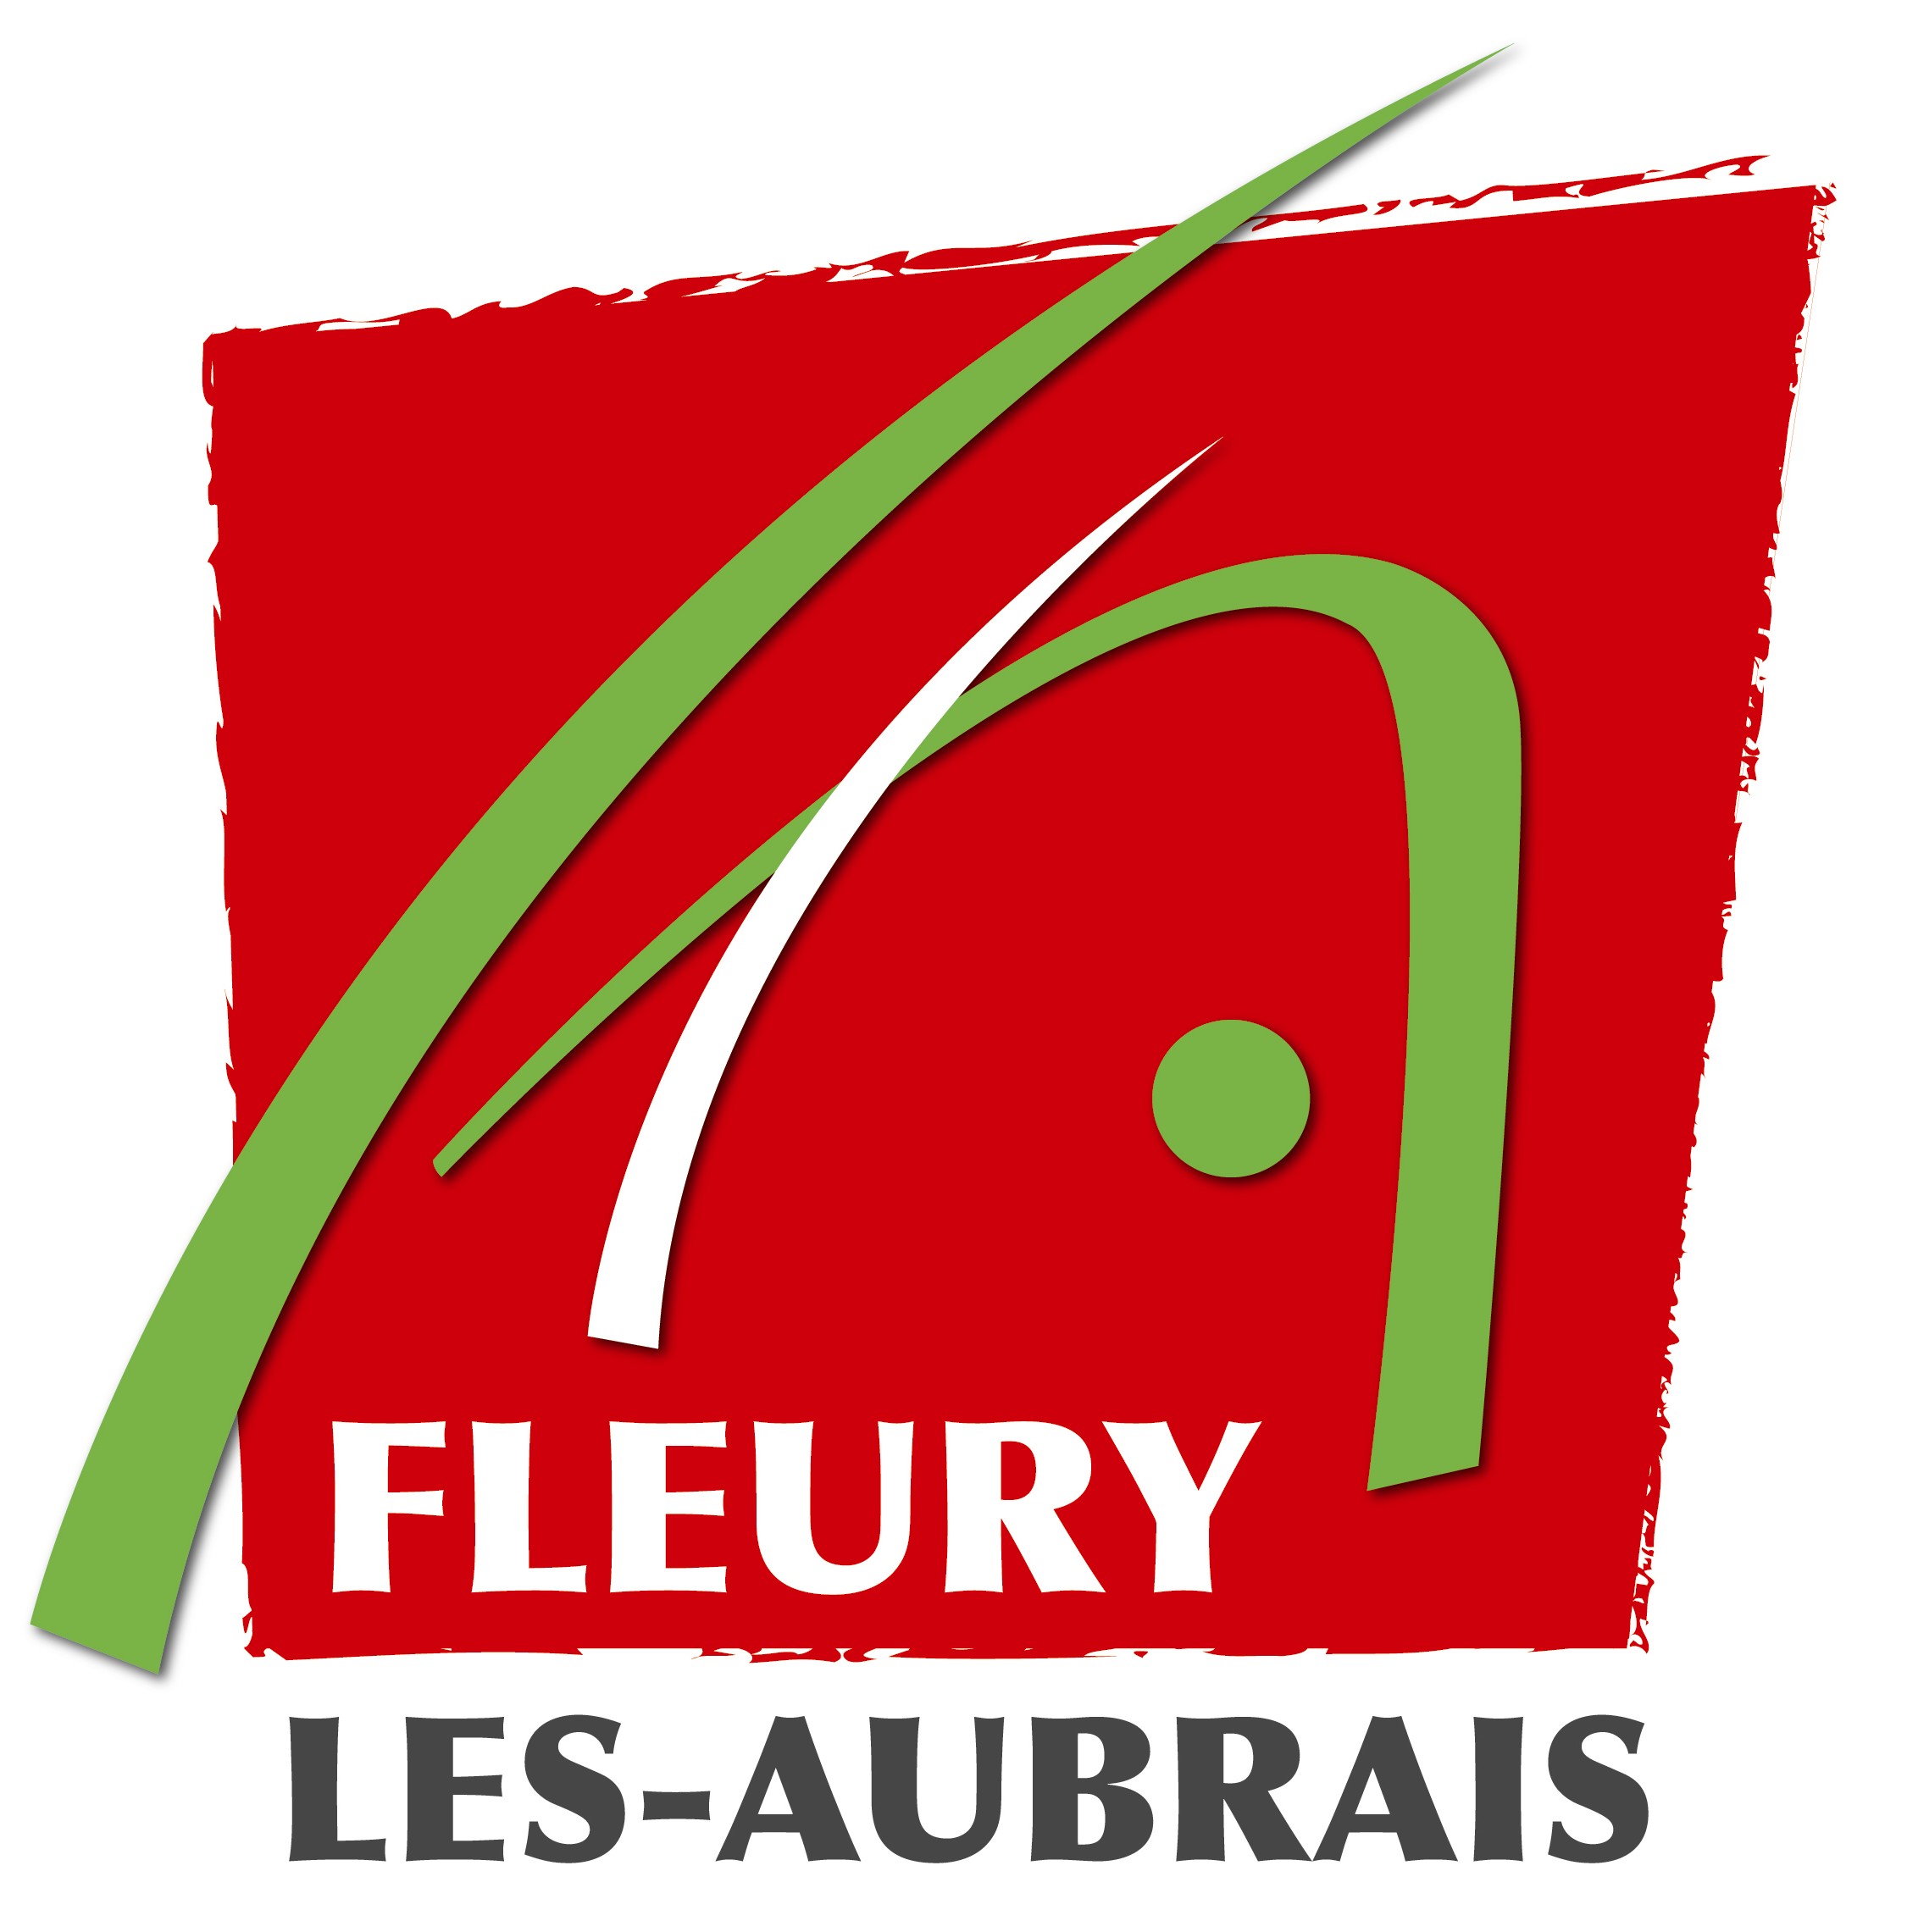 VILLE DE FLEURY LES AUBRAIS